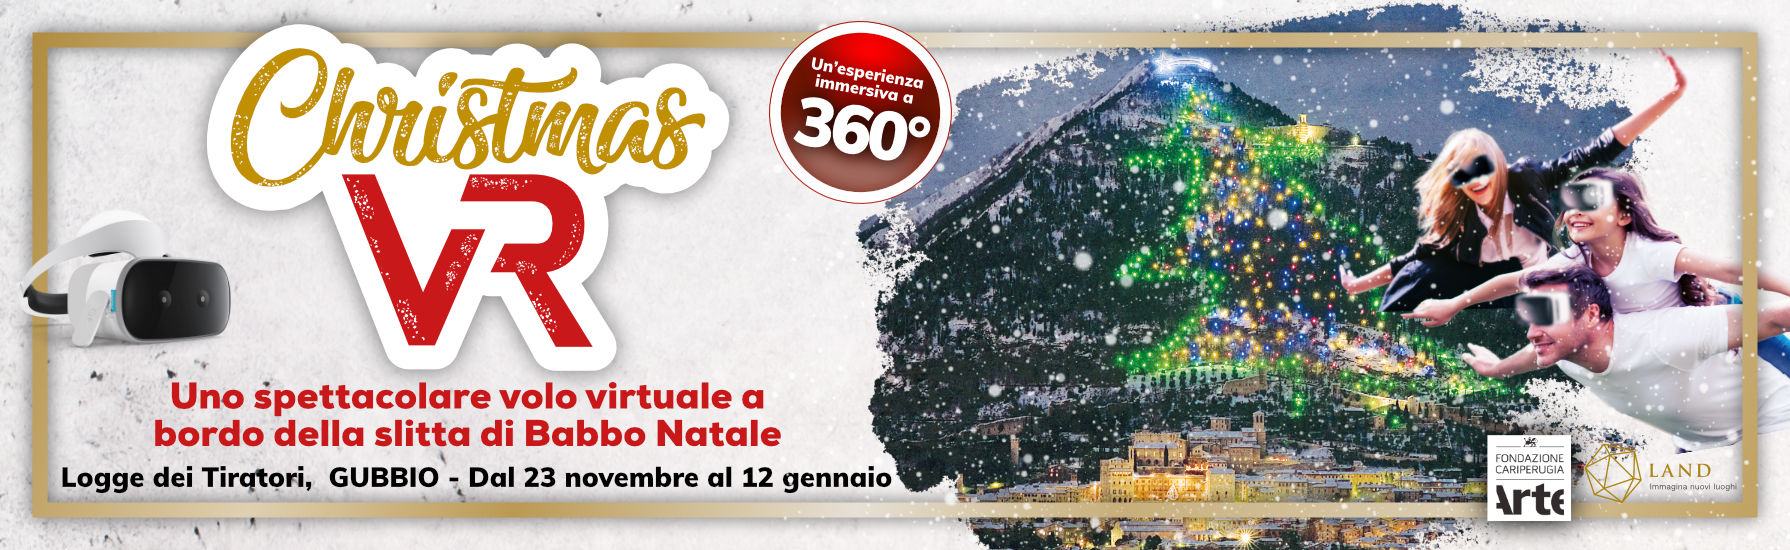 Christmas VR, uno spettacolare volo virtuale alle Logge di Gubbio